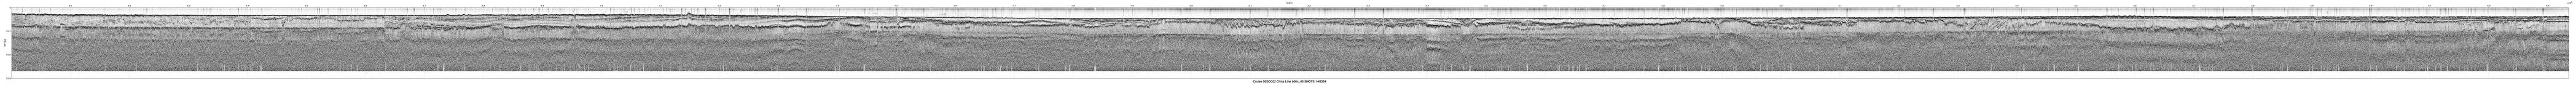 00SCC02 b00c_45 seismic profile image